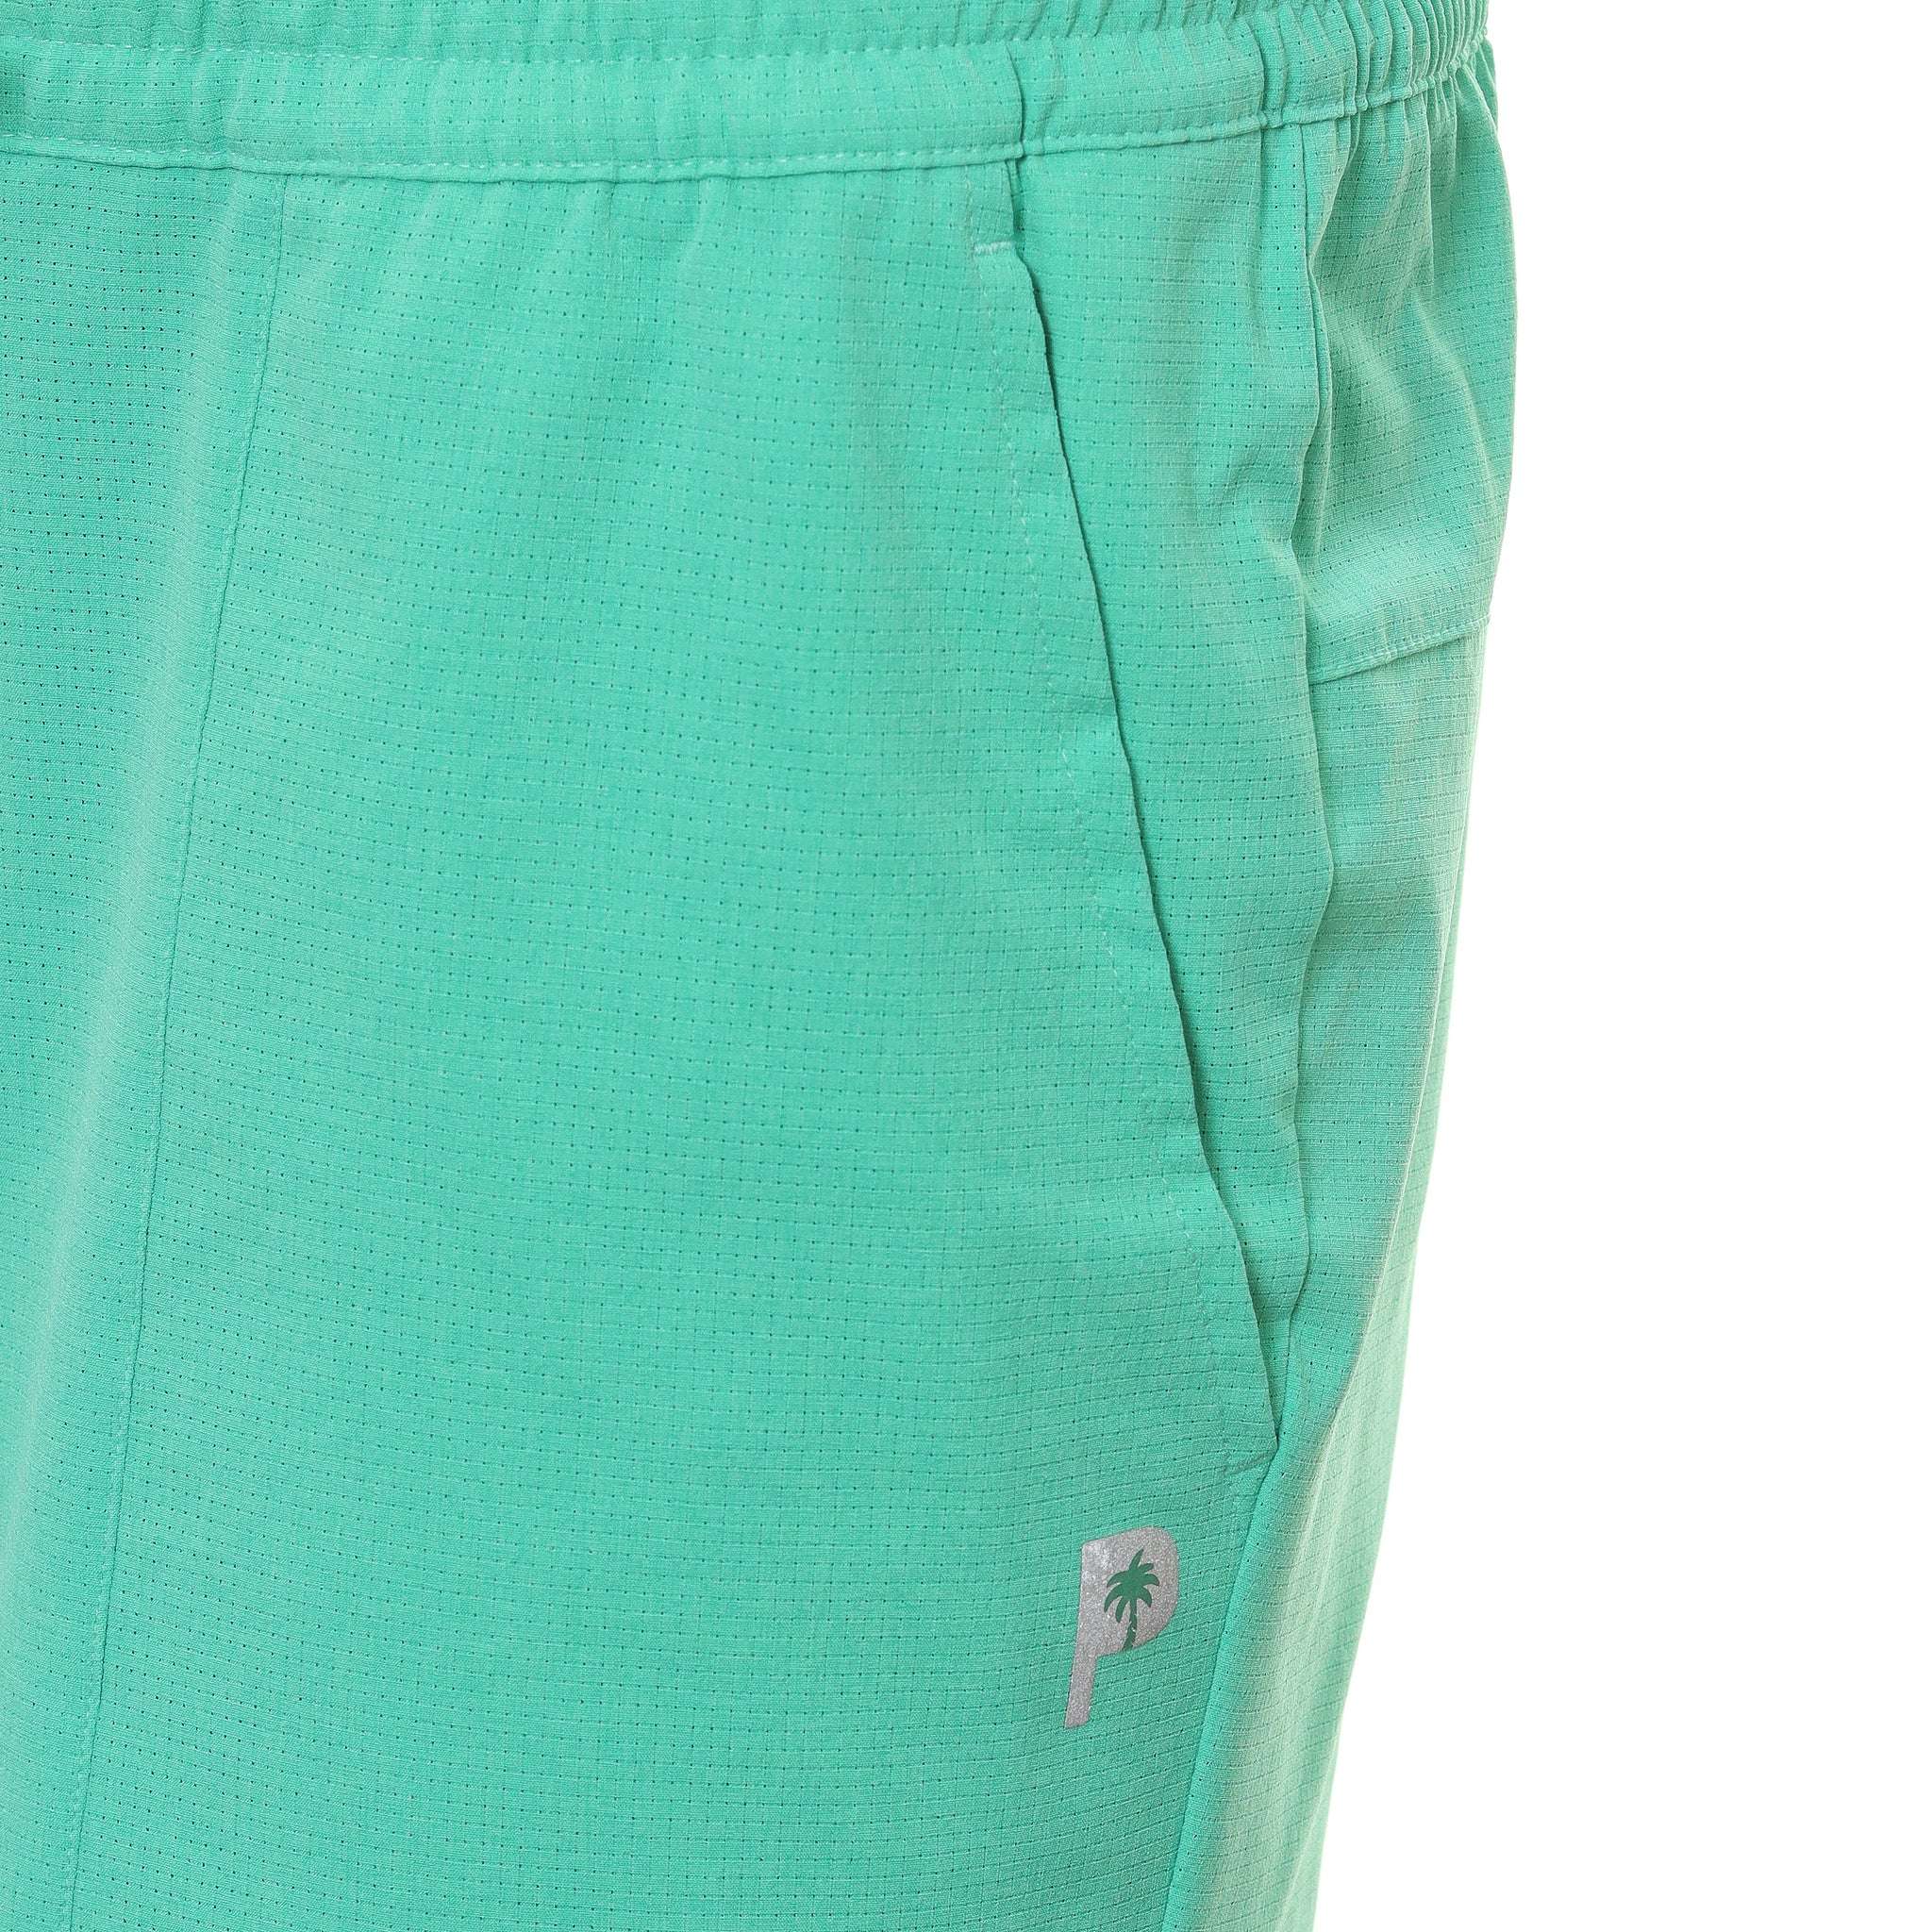 puma-golf-x-ptc-vented-shorts-539203-aqua-green-03